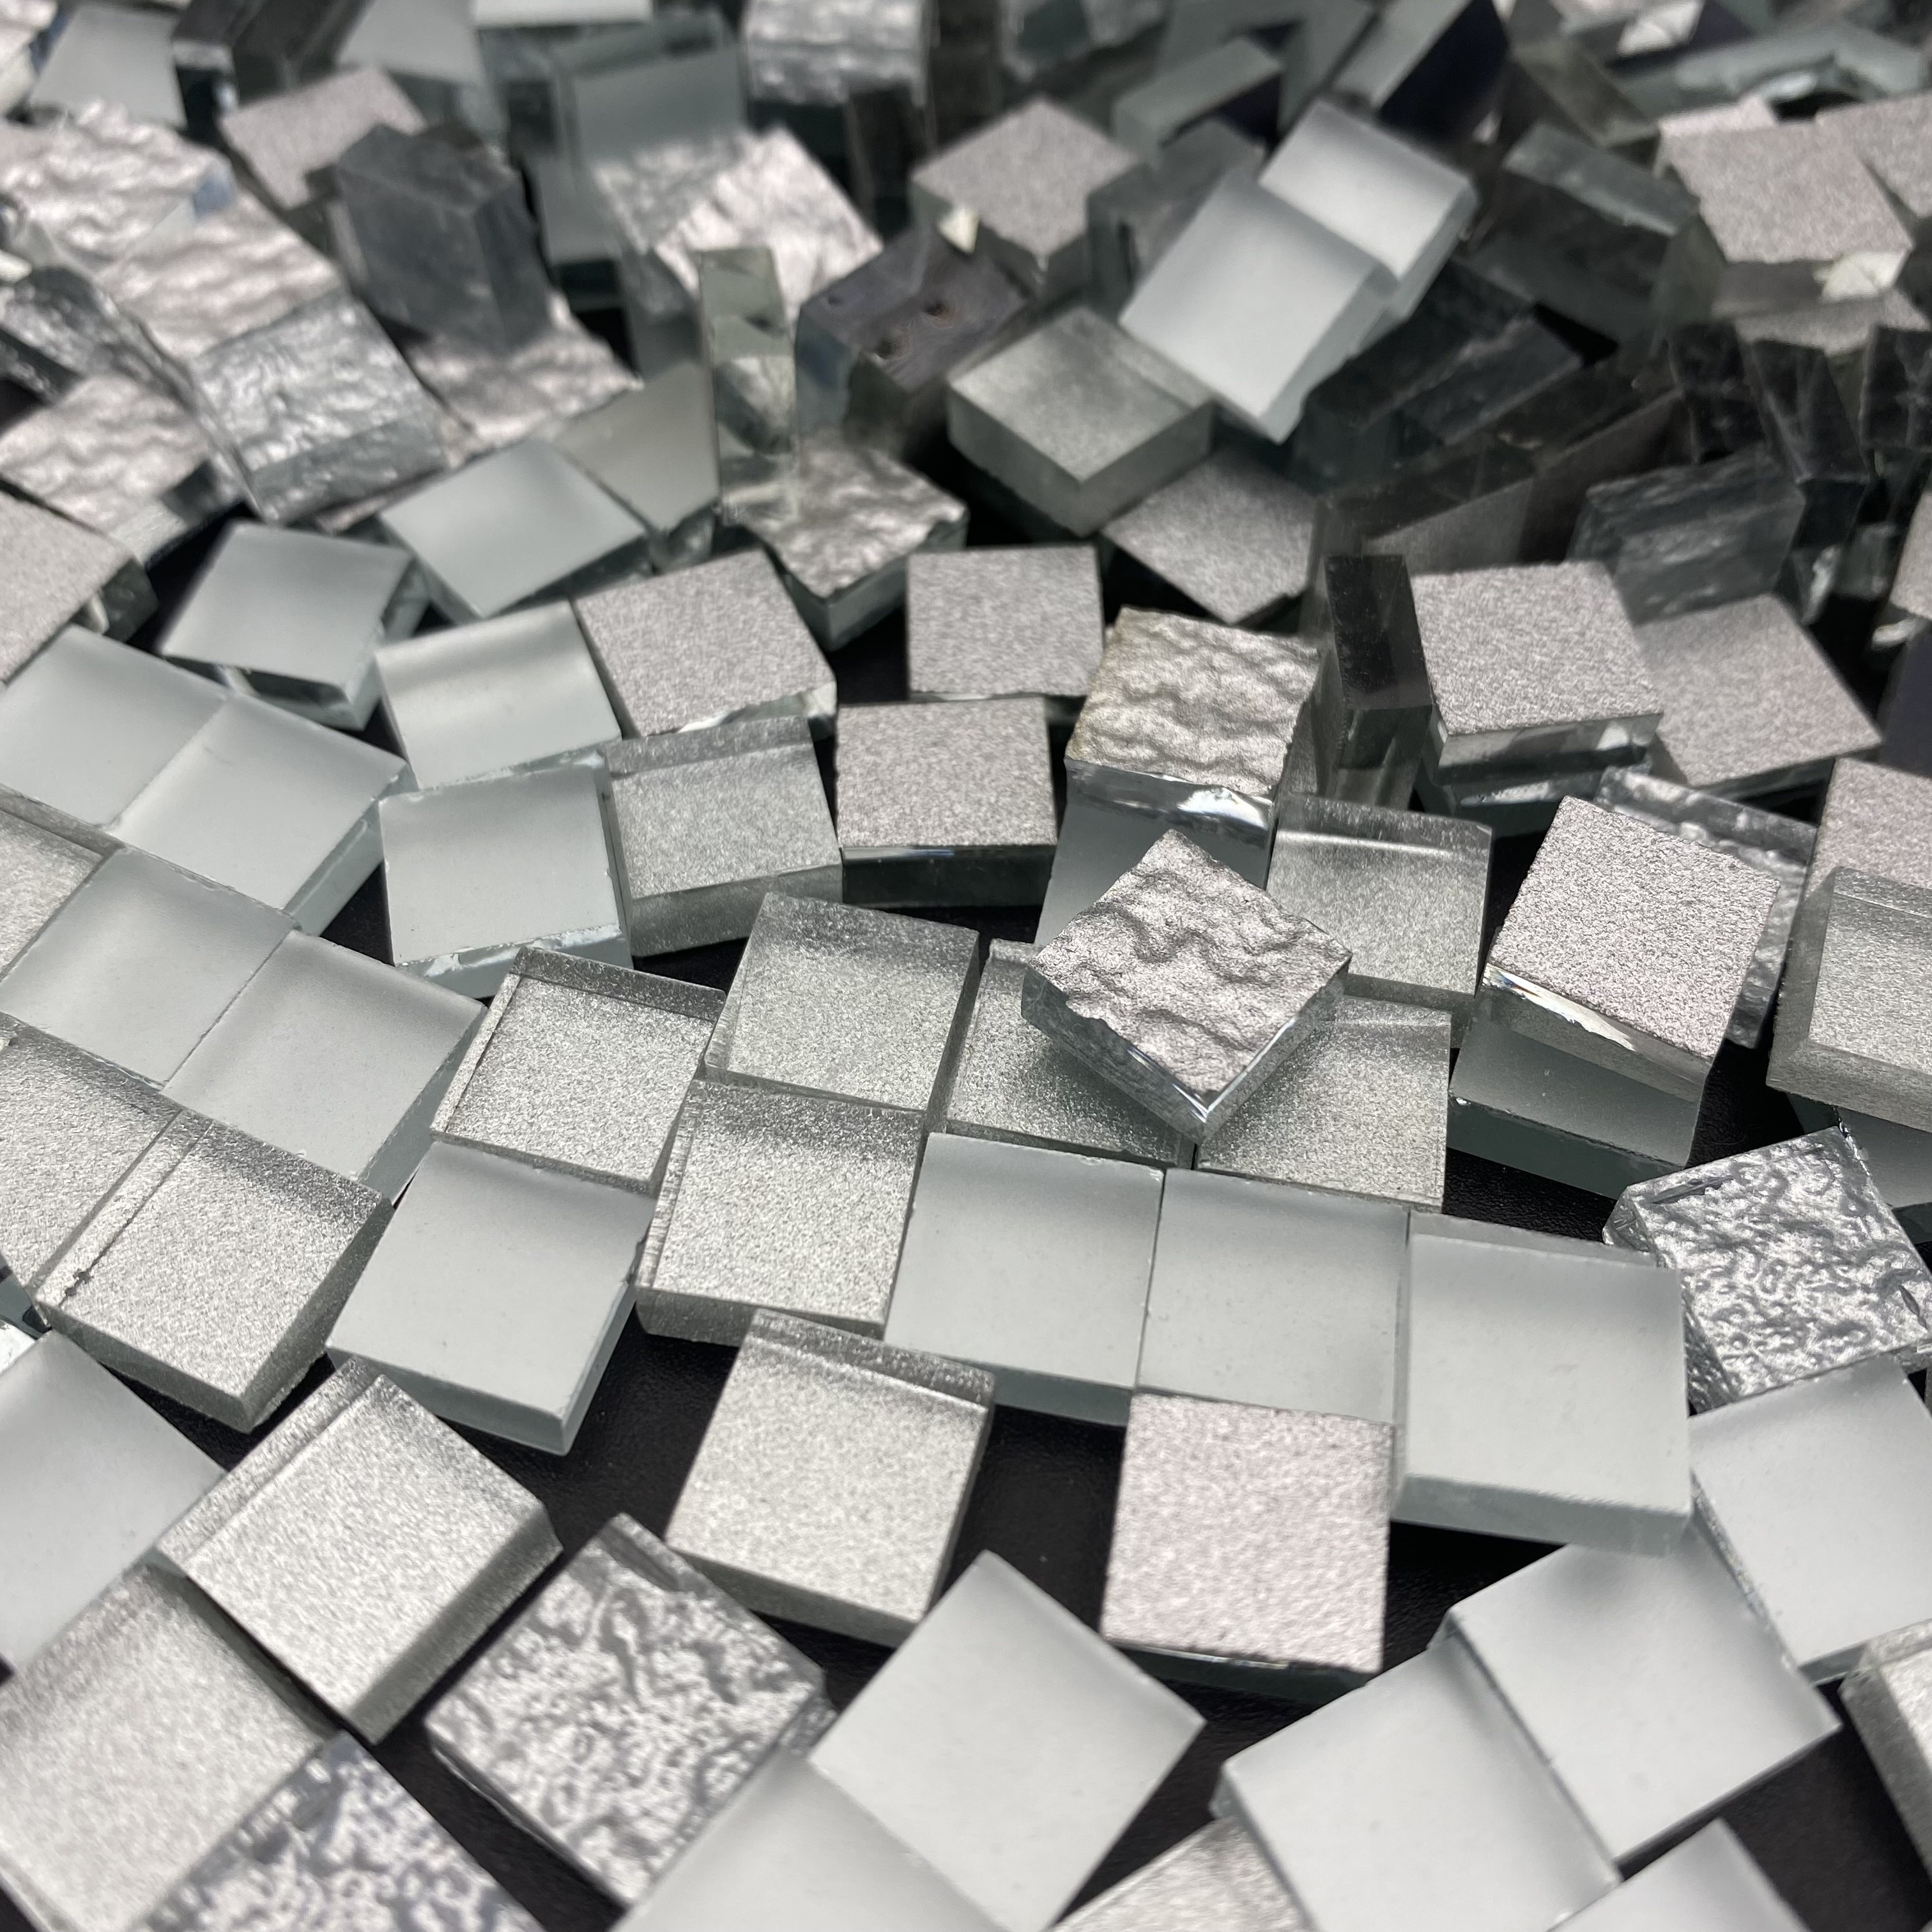 Silver Glass Bling Mirror Mosaic Tile Sample丨Diflart